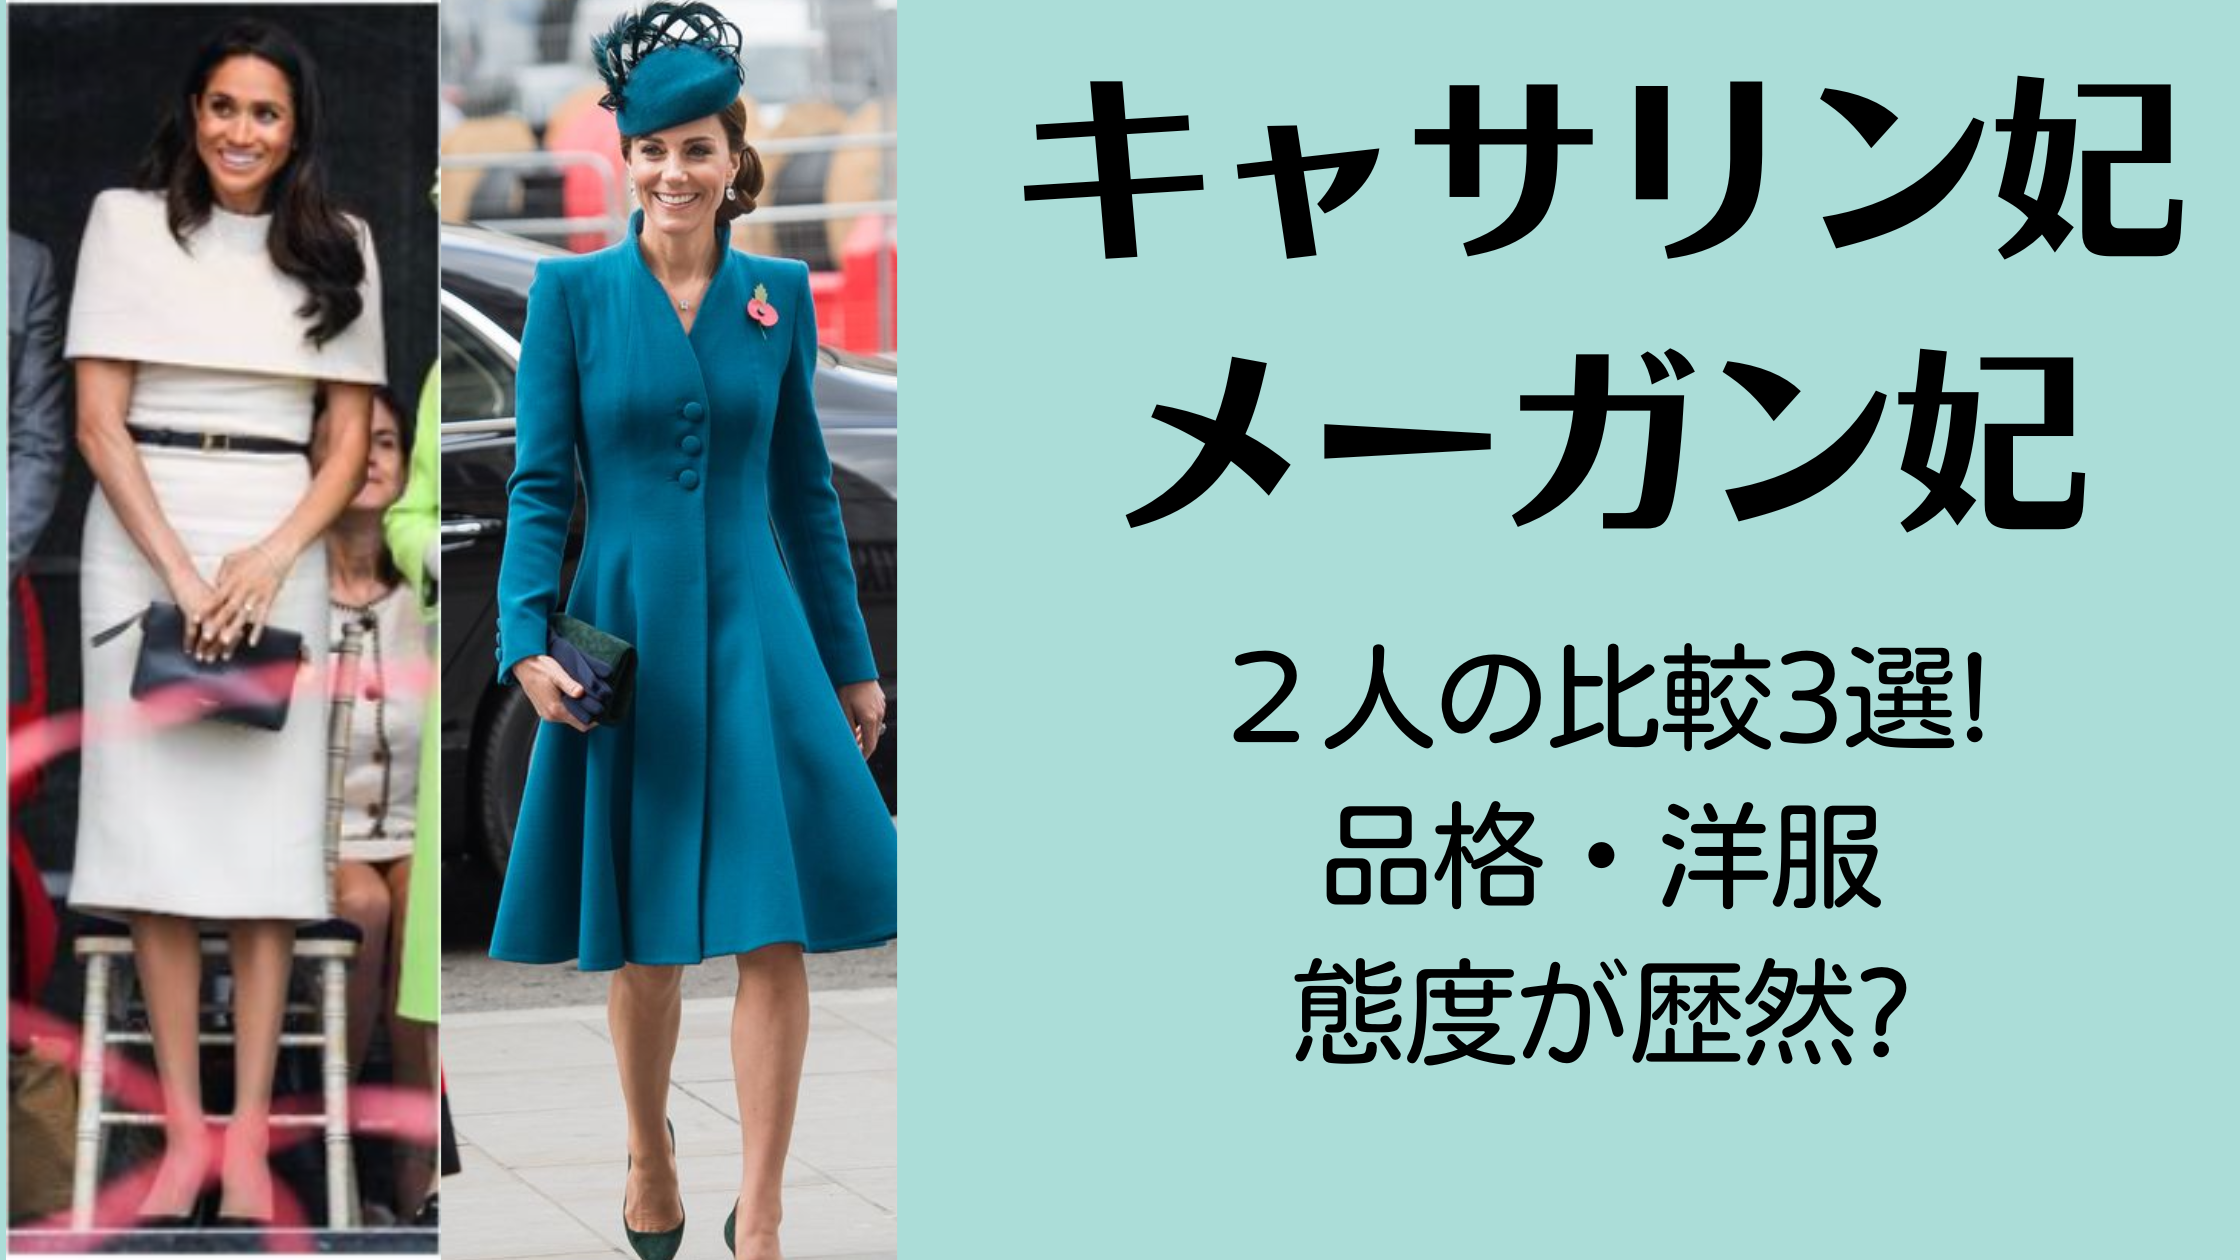 【画像】キャサリン妃とメーガン妃の比較3選!品格・洋服・態度が歴然?